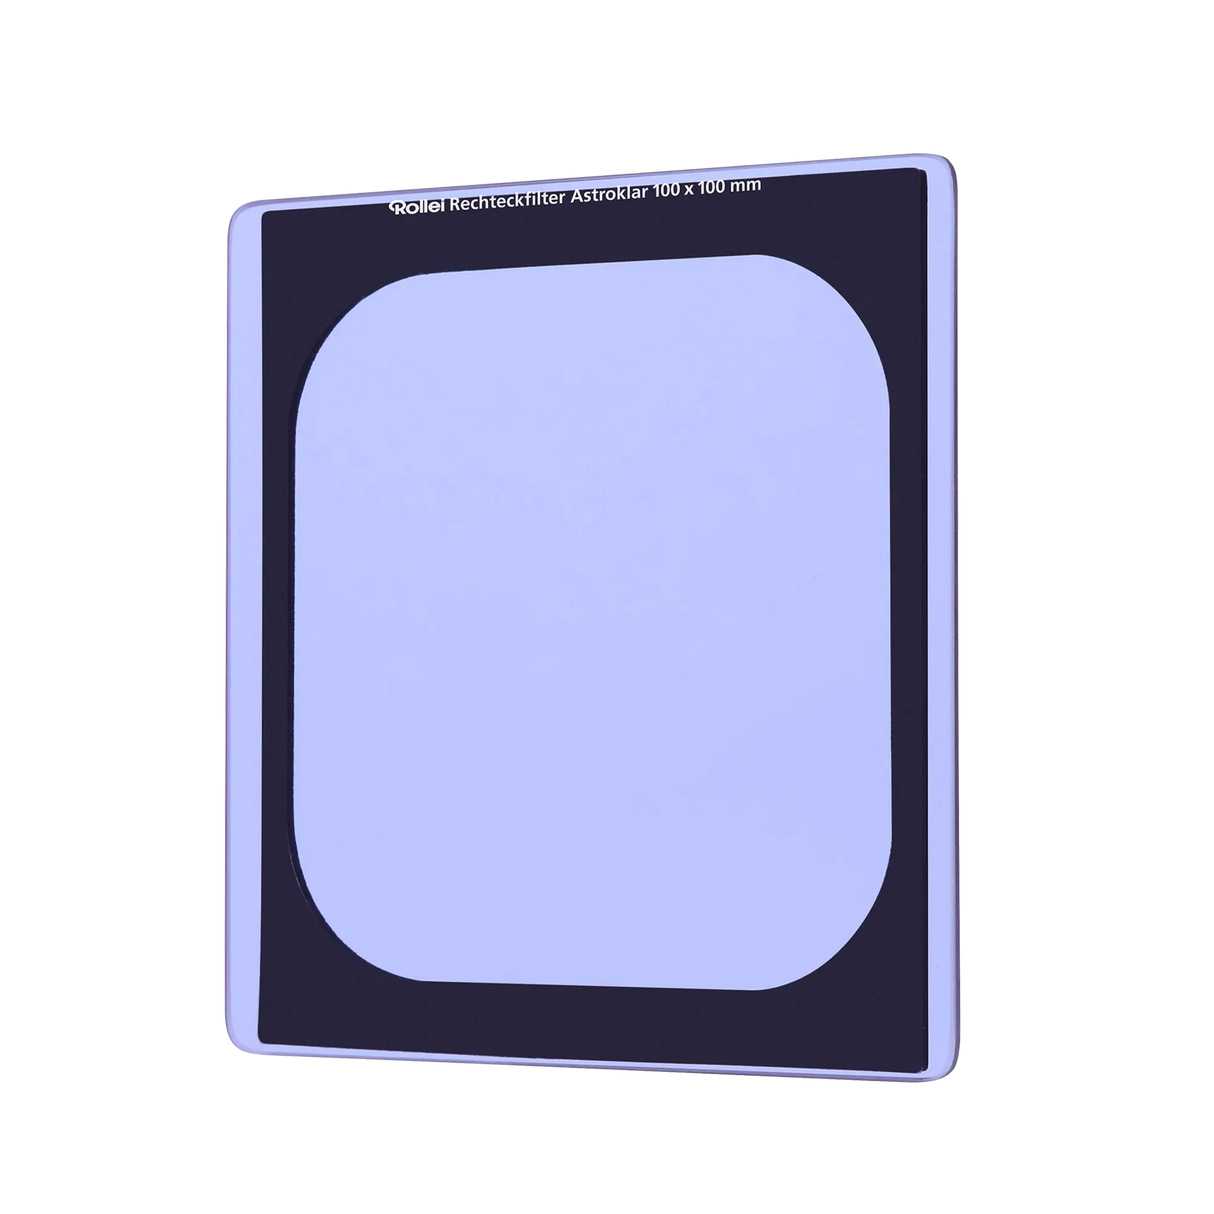 Rollei Filter Astroklar Rechteckfilter - Nachtlicht Filter 100 mm